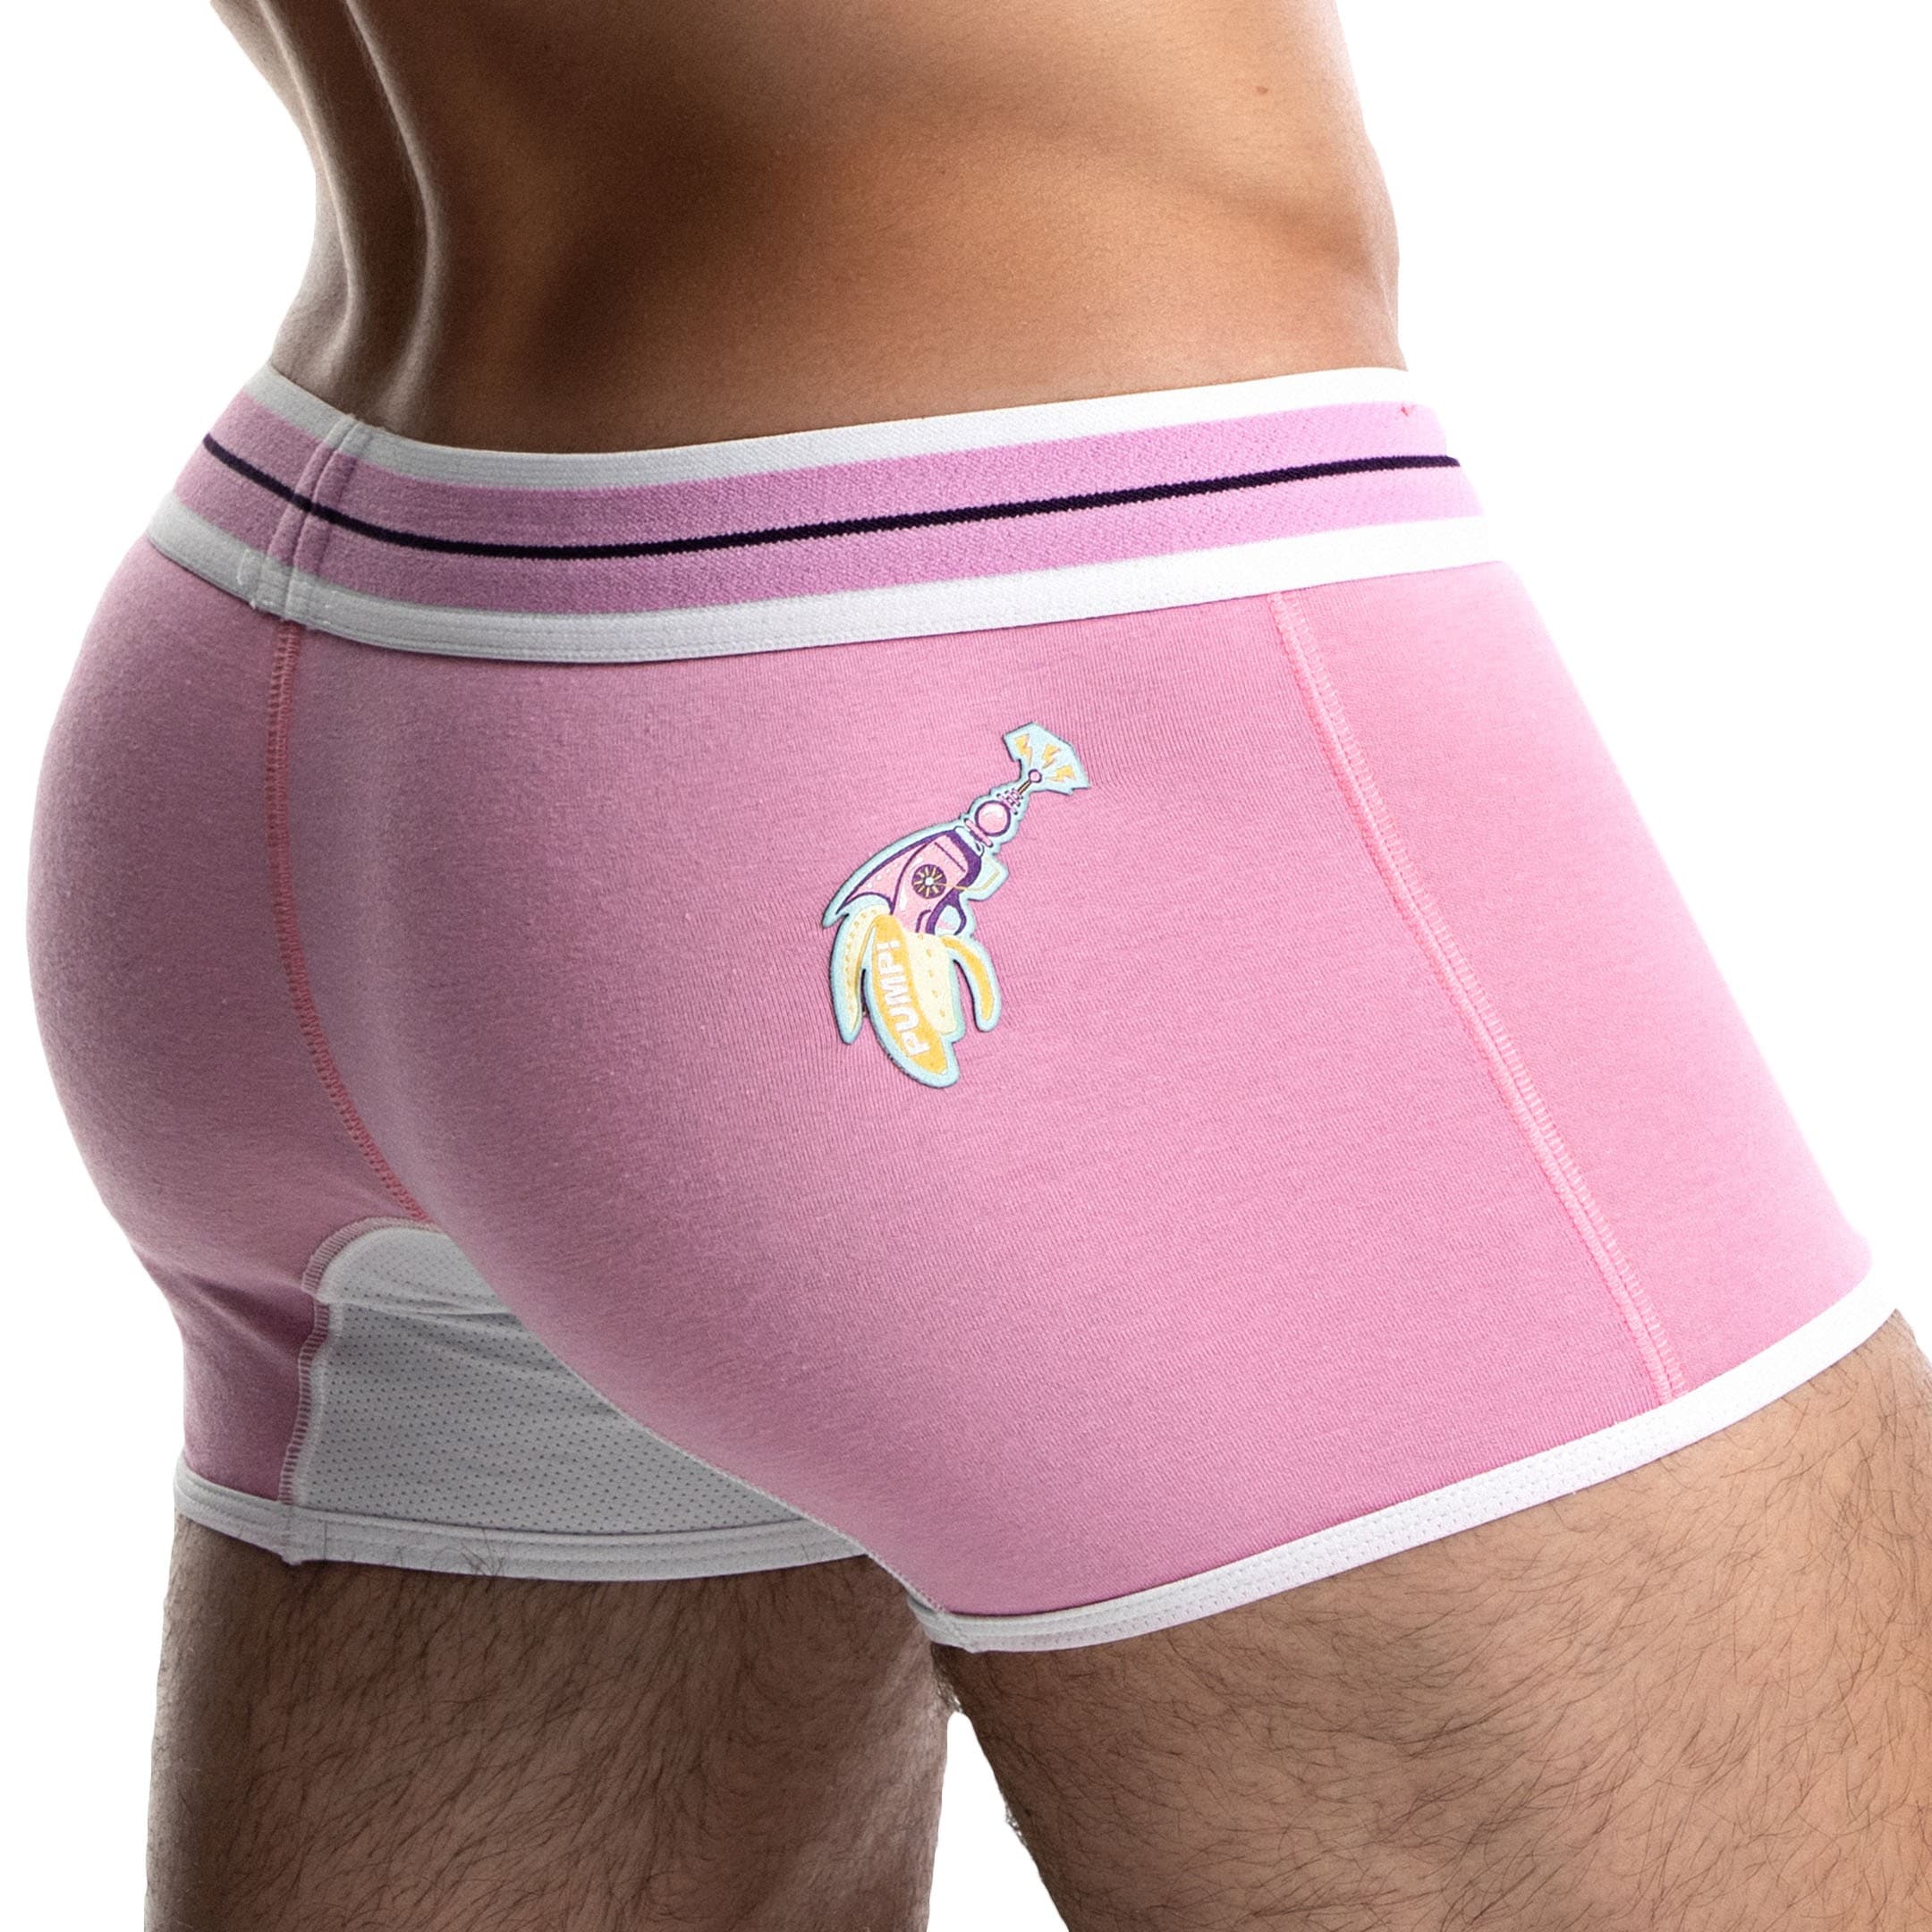  Purple Space Men's Underwear Soft Boxer Briefs High